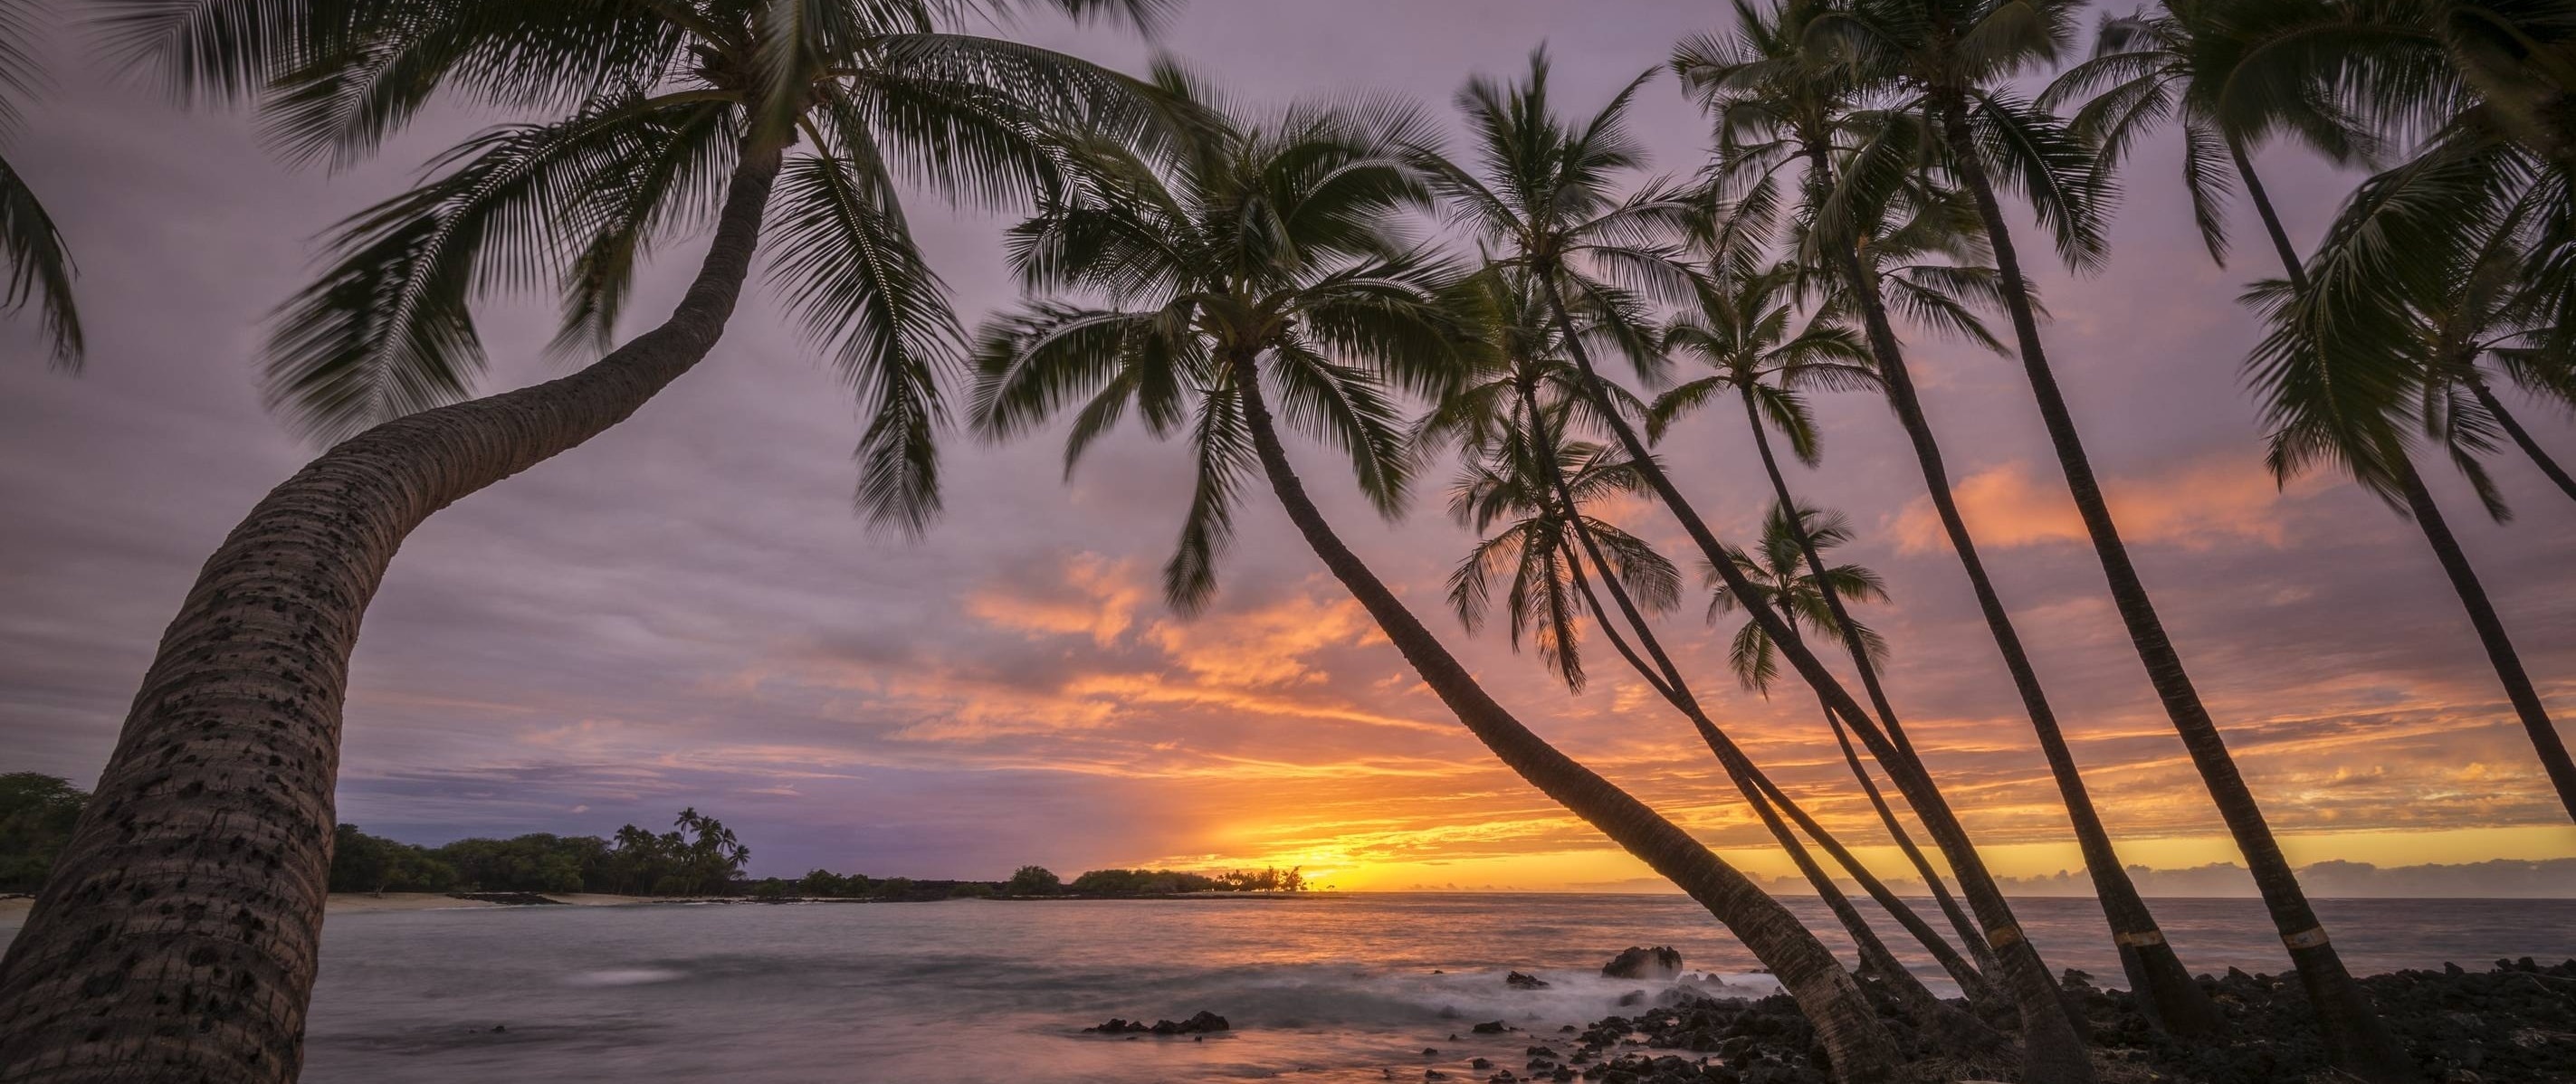 Makalawena Beach, Hawaiianischer Sonnenuntergang Wallpaper, 2850x1200 Dual Screen Desktop